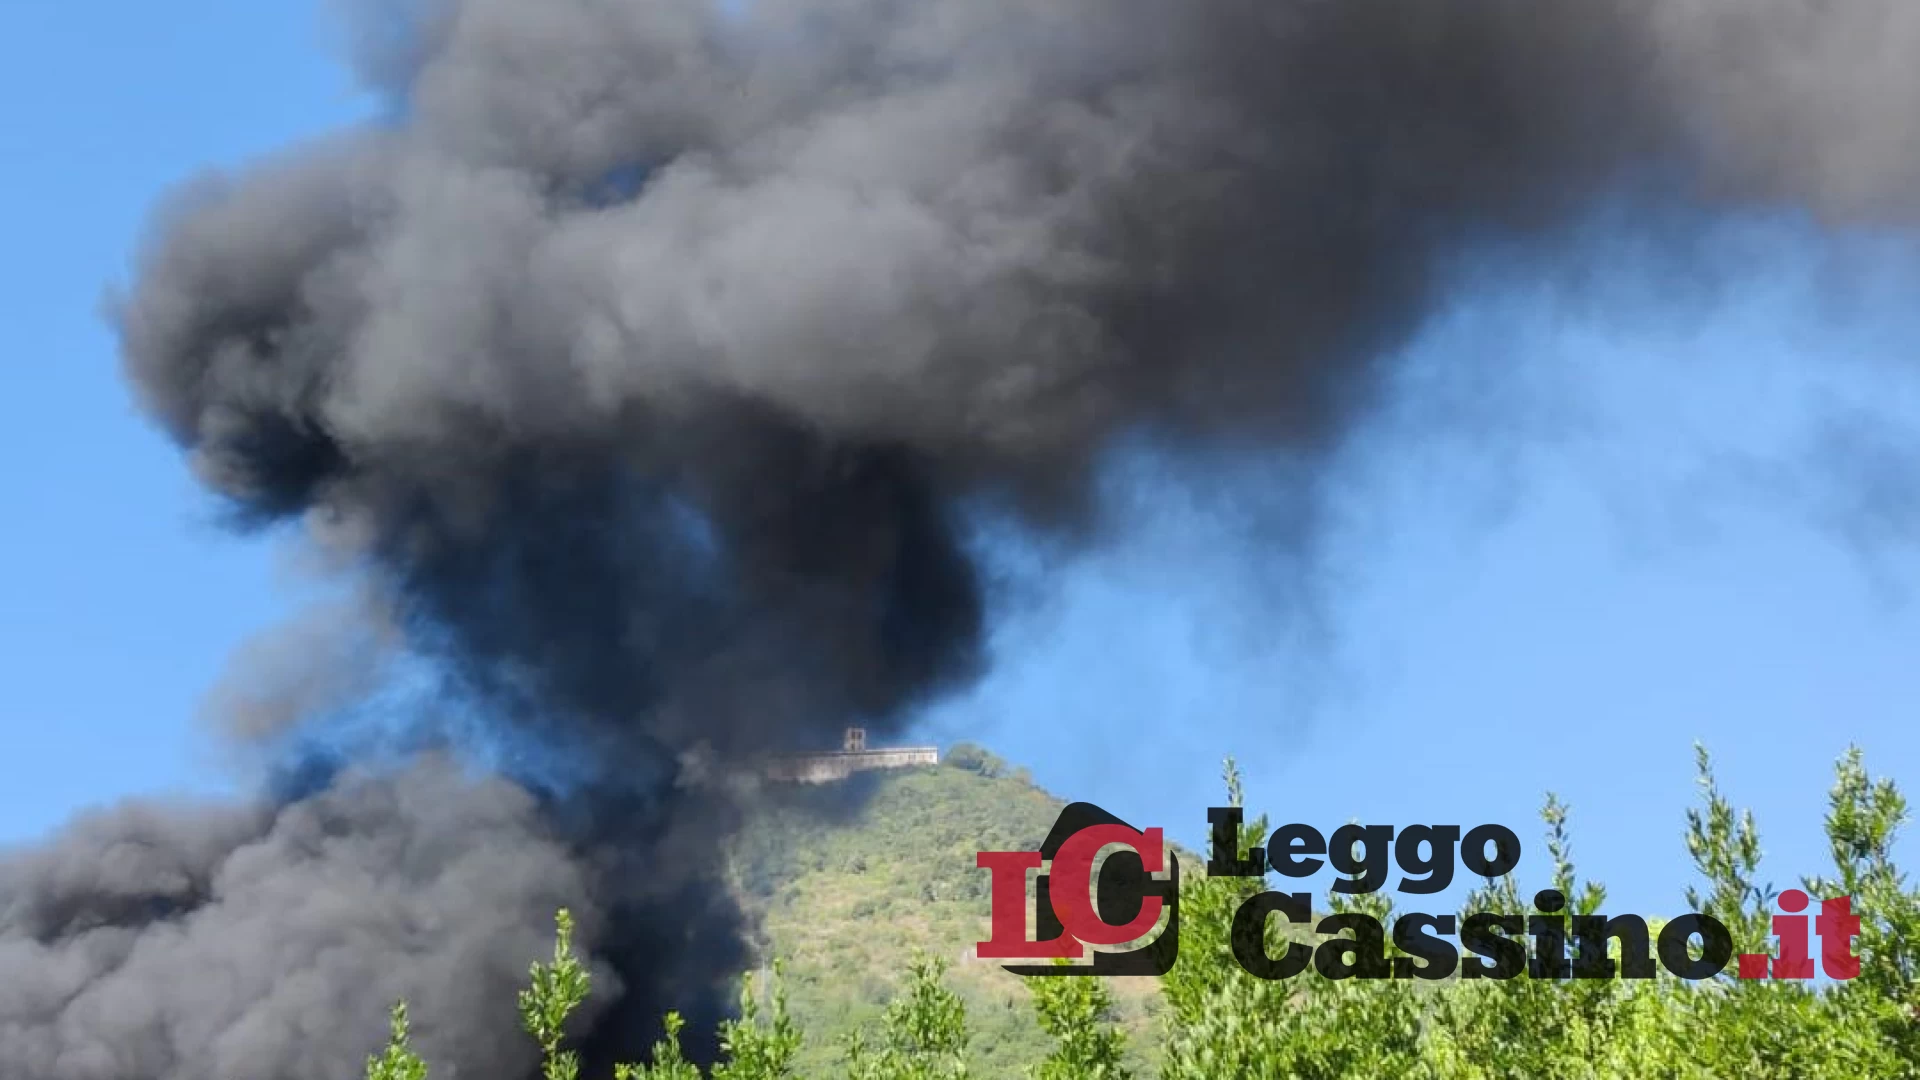 Bus prende fuoco in pieno centro a Cassino: attimi di panico